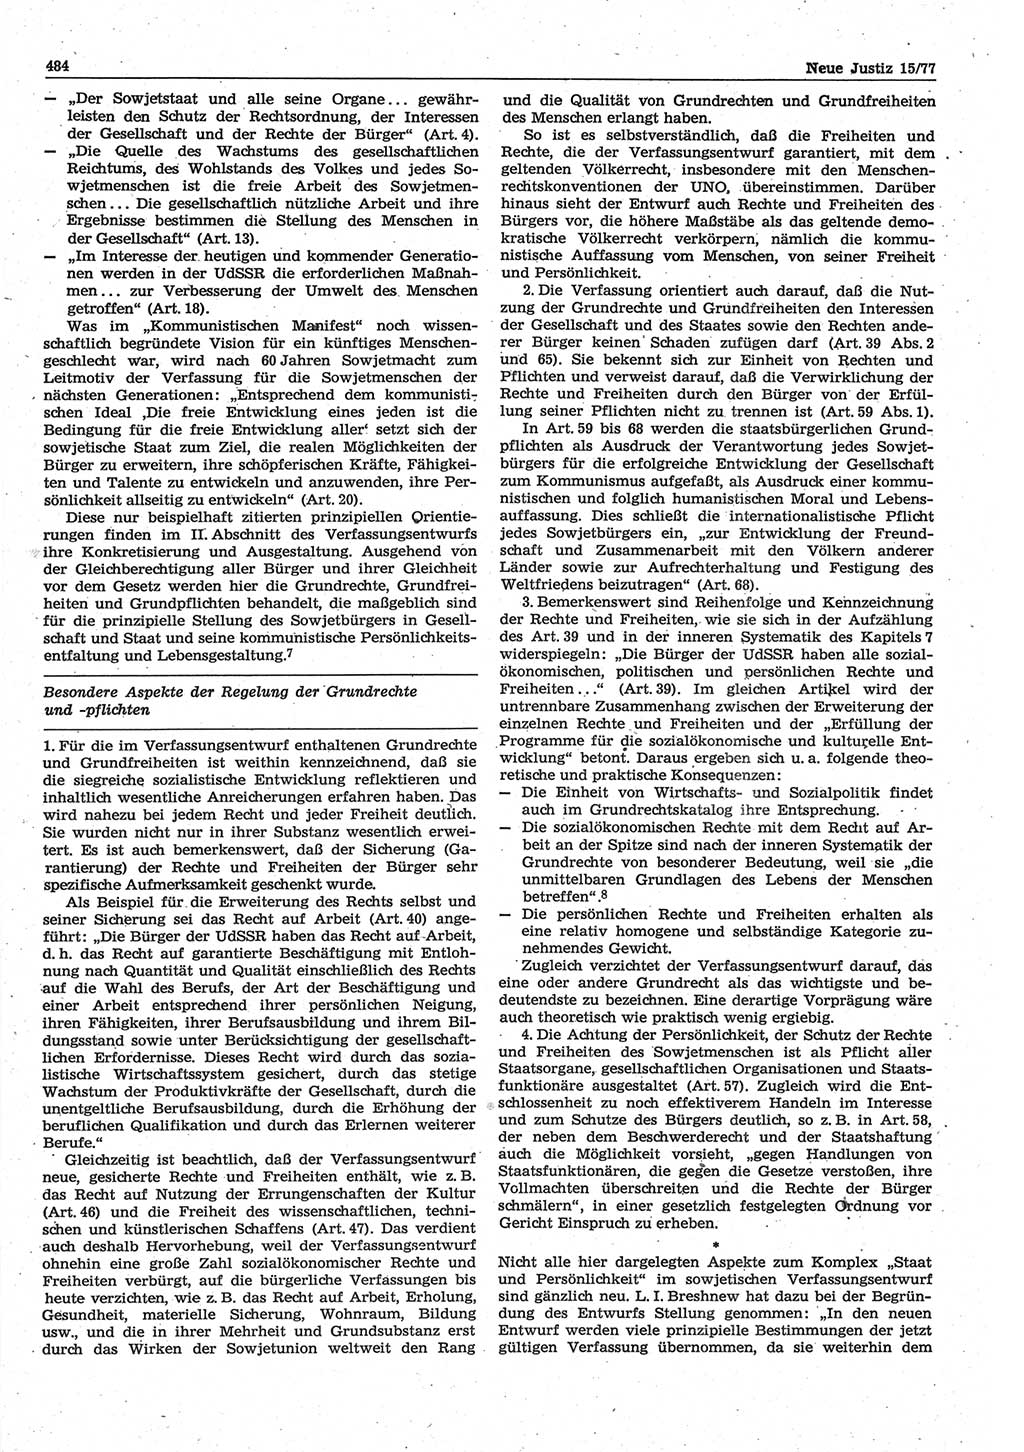 Neue Justiz (NJ), Zeitschrift für Recht und Rechtswissenschaft-Zeitschrift, sozialistisches Recht und Gesetzlichkeit, 31. Jahrgang 1977, Seite 484 (NJ DDR 1977, S. 484)